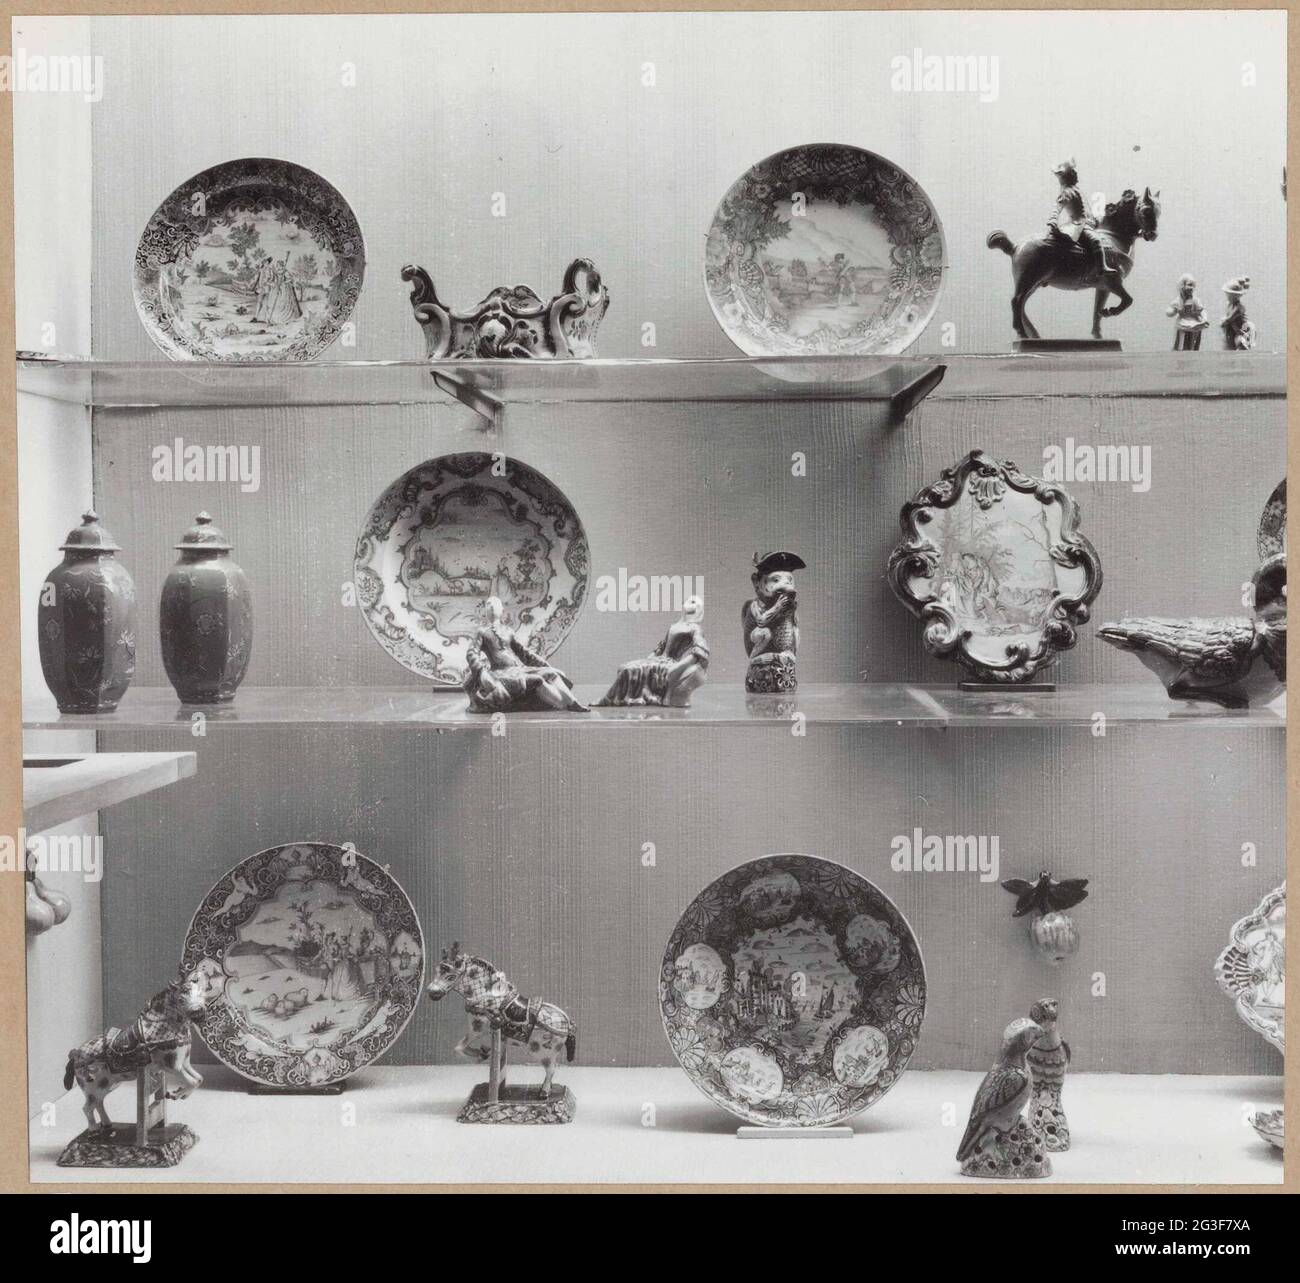 Vetrina con oggetti di ceramica tra cui piatti, pentole e immagini di  figure animali e umane; allestimento di prova ceramica Foto stock - Alamy